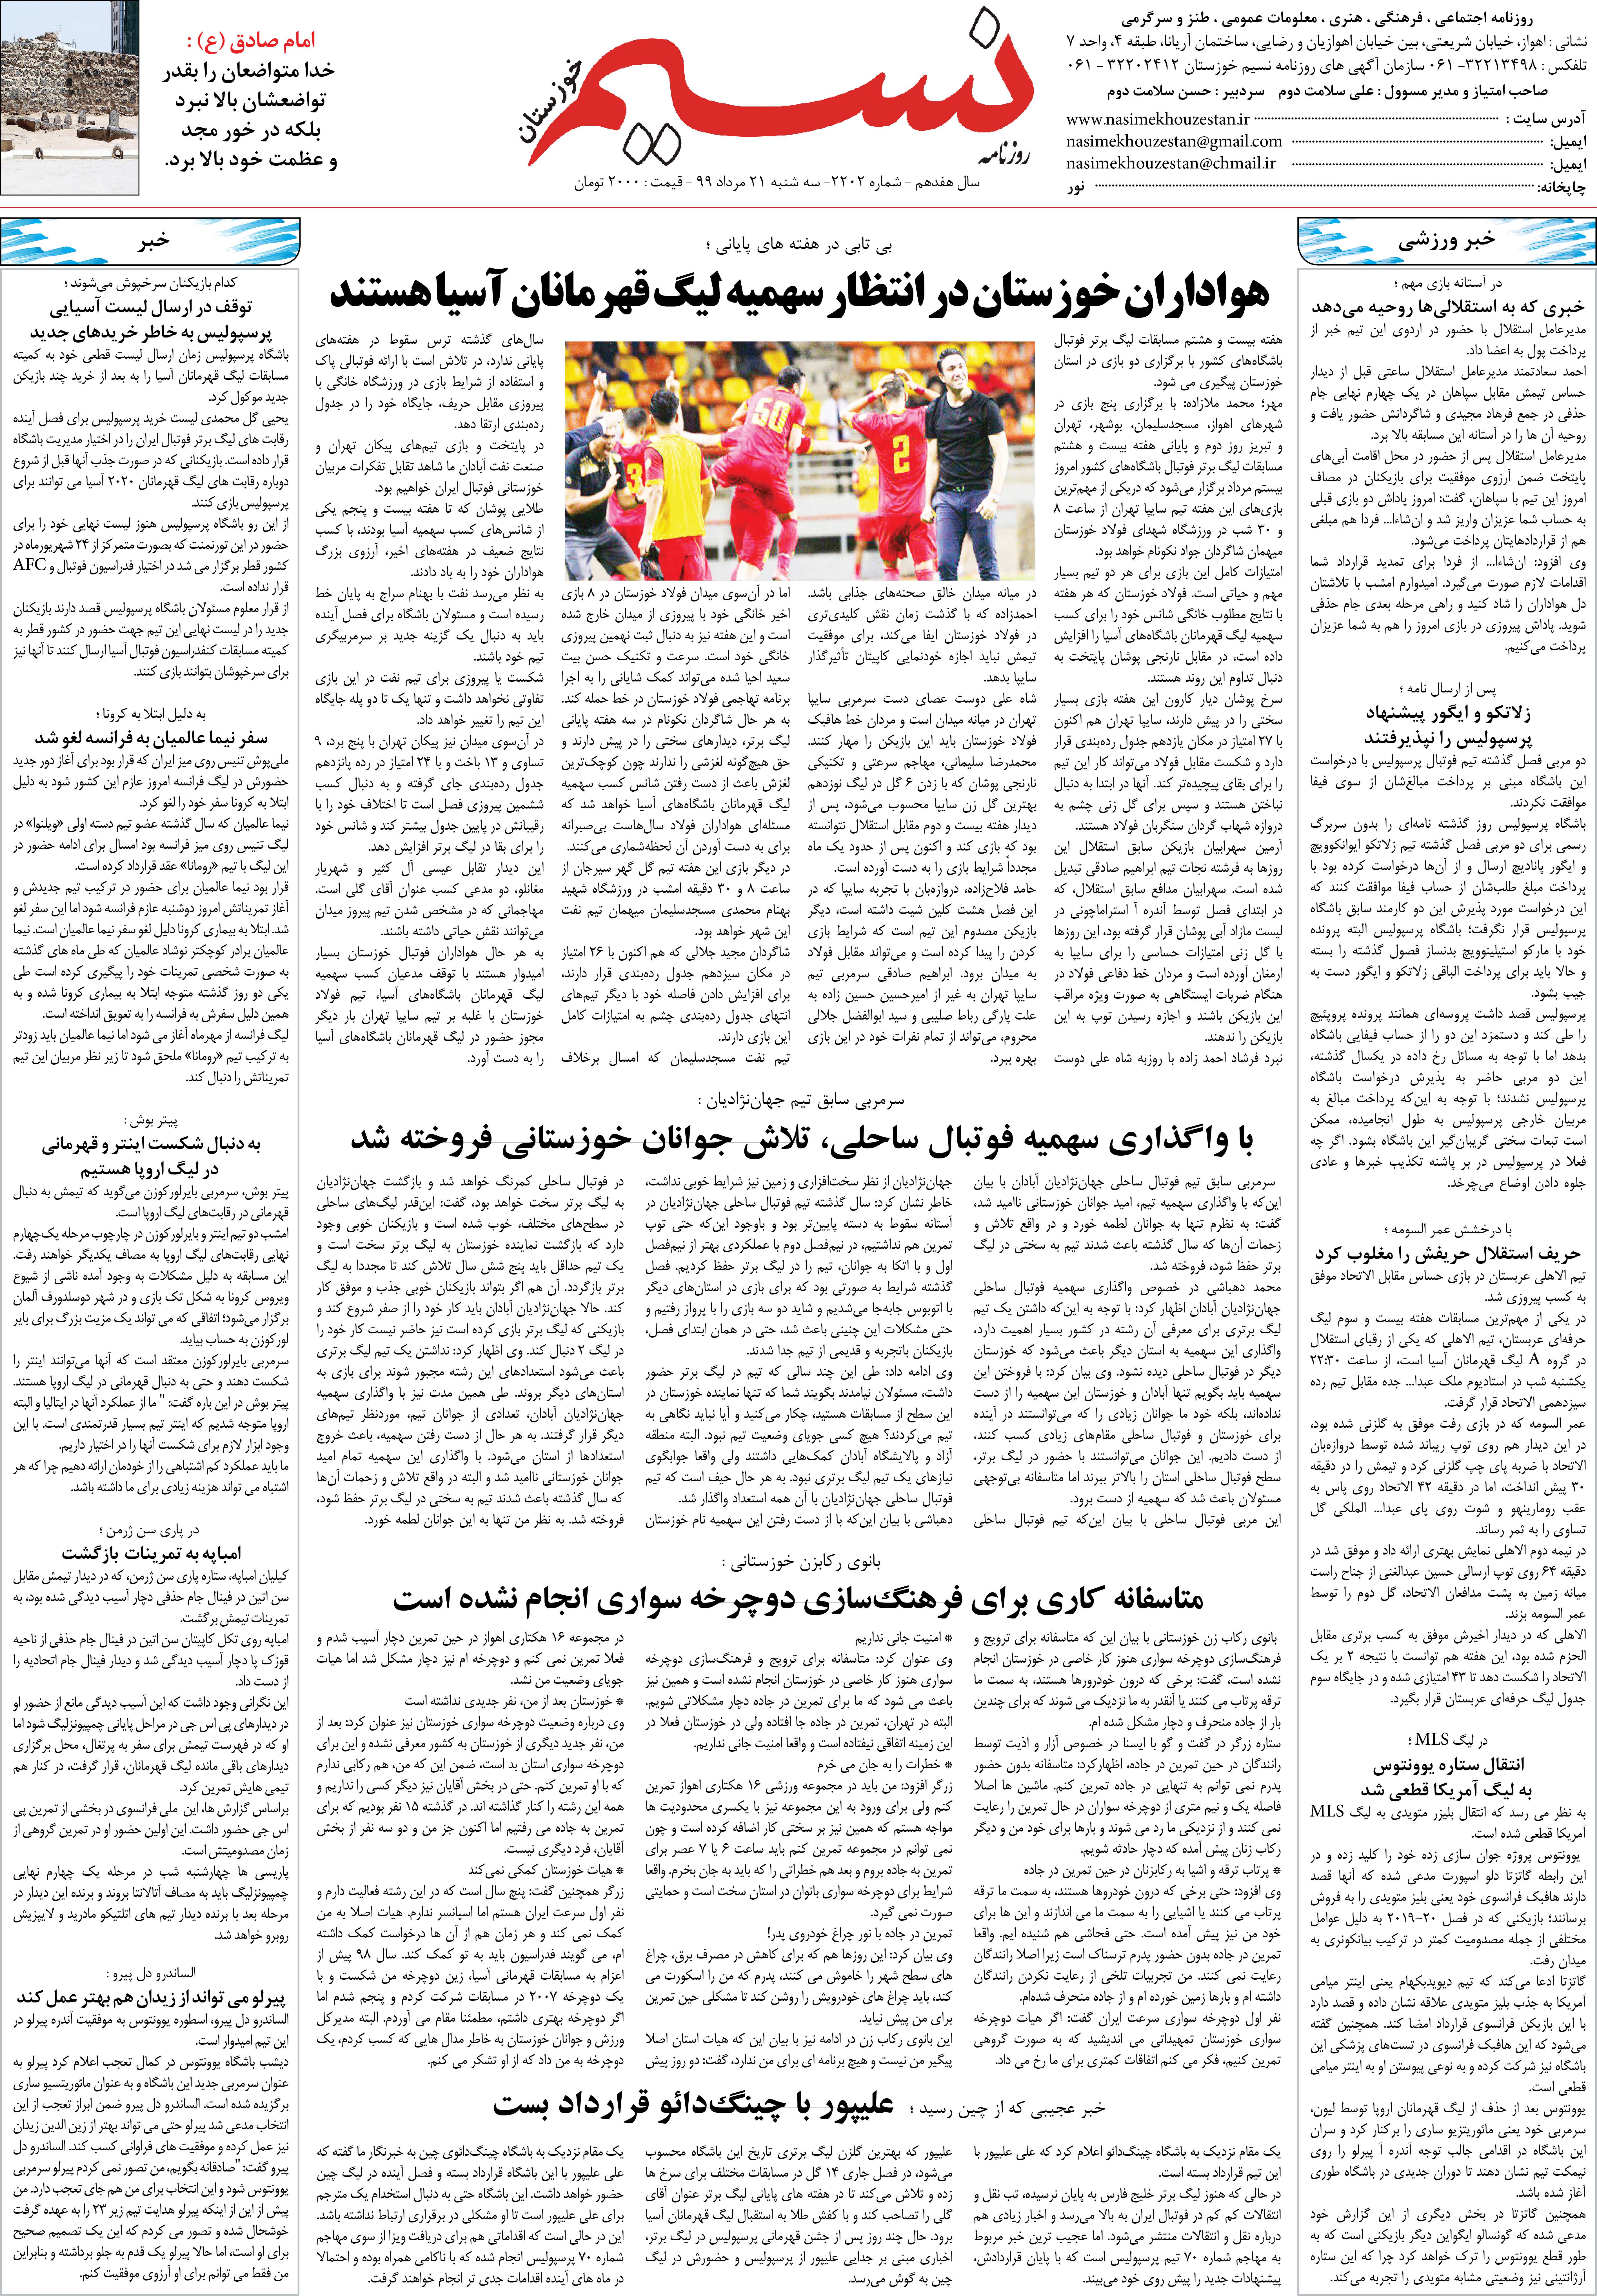 صفحه آخر روزنامه نسیم شماره 2202